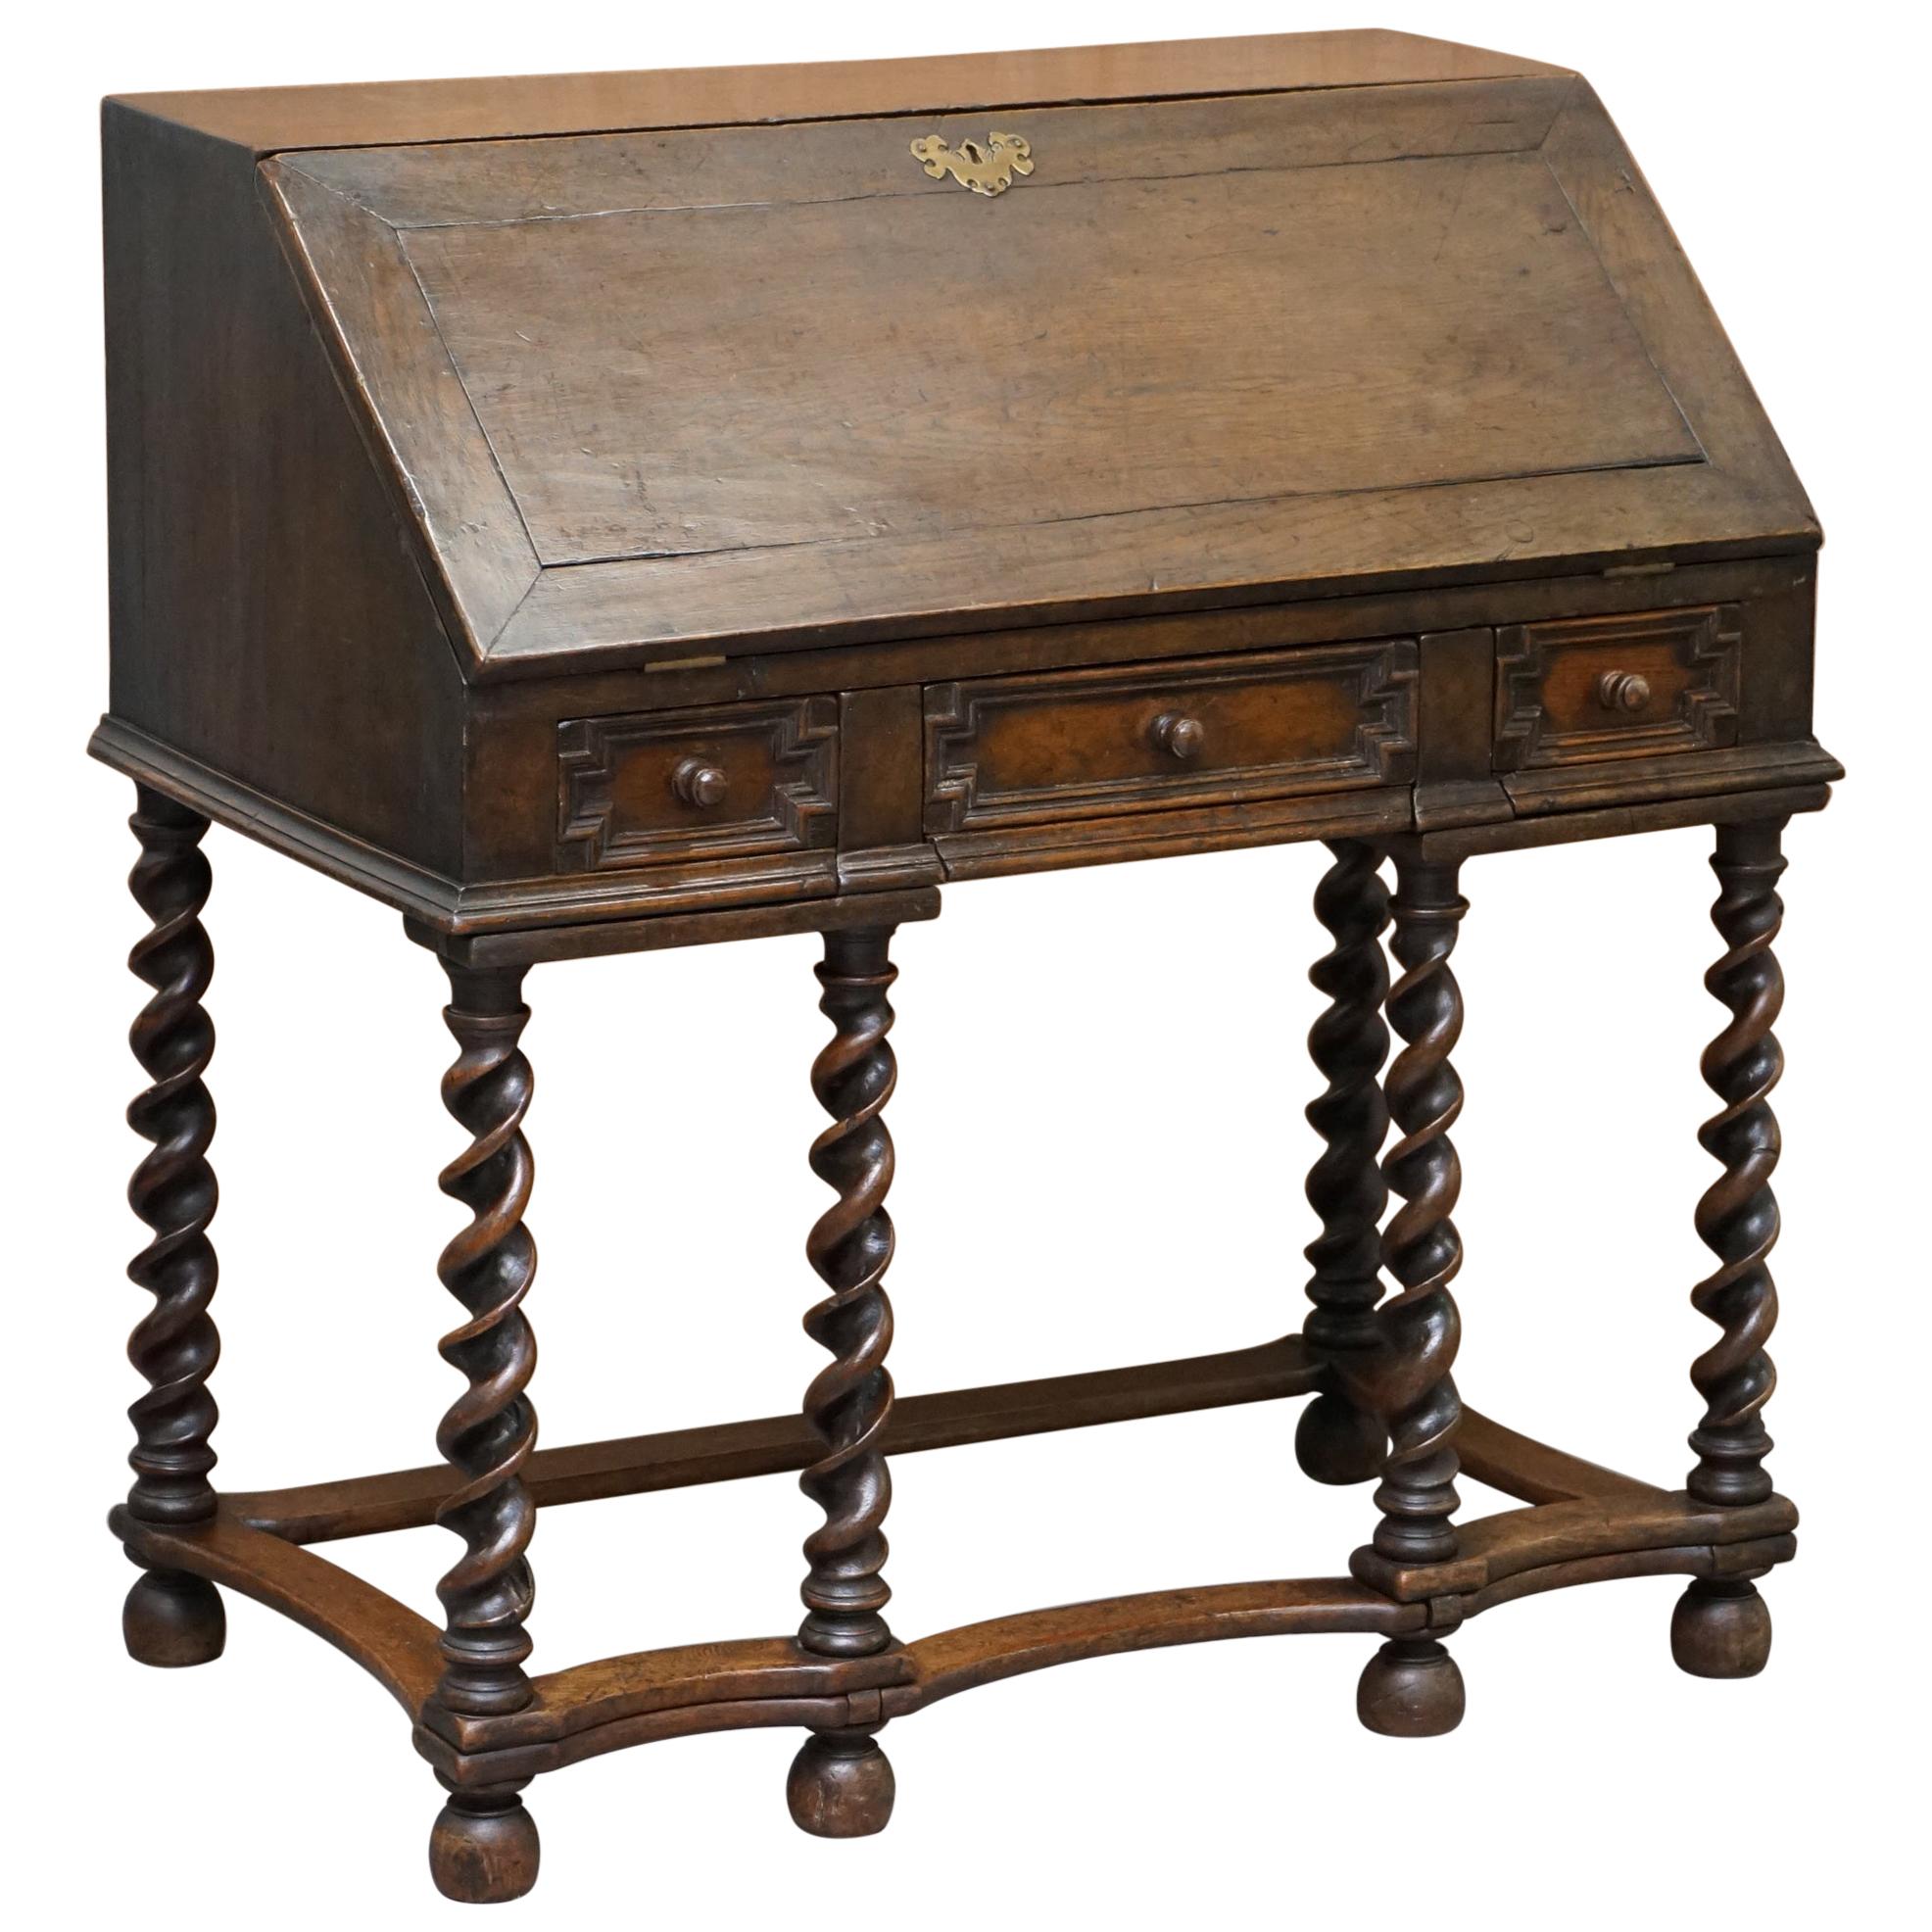 Rare William & Mary circa 1690 English Oak Barley Twist Bureau Desk on Stand